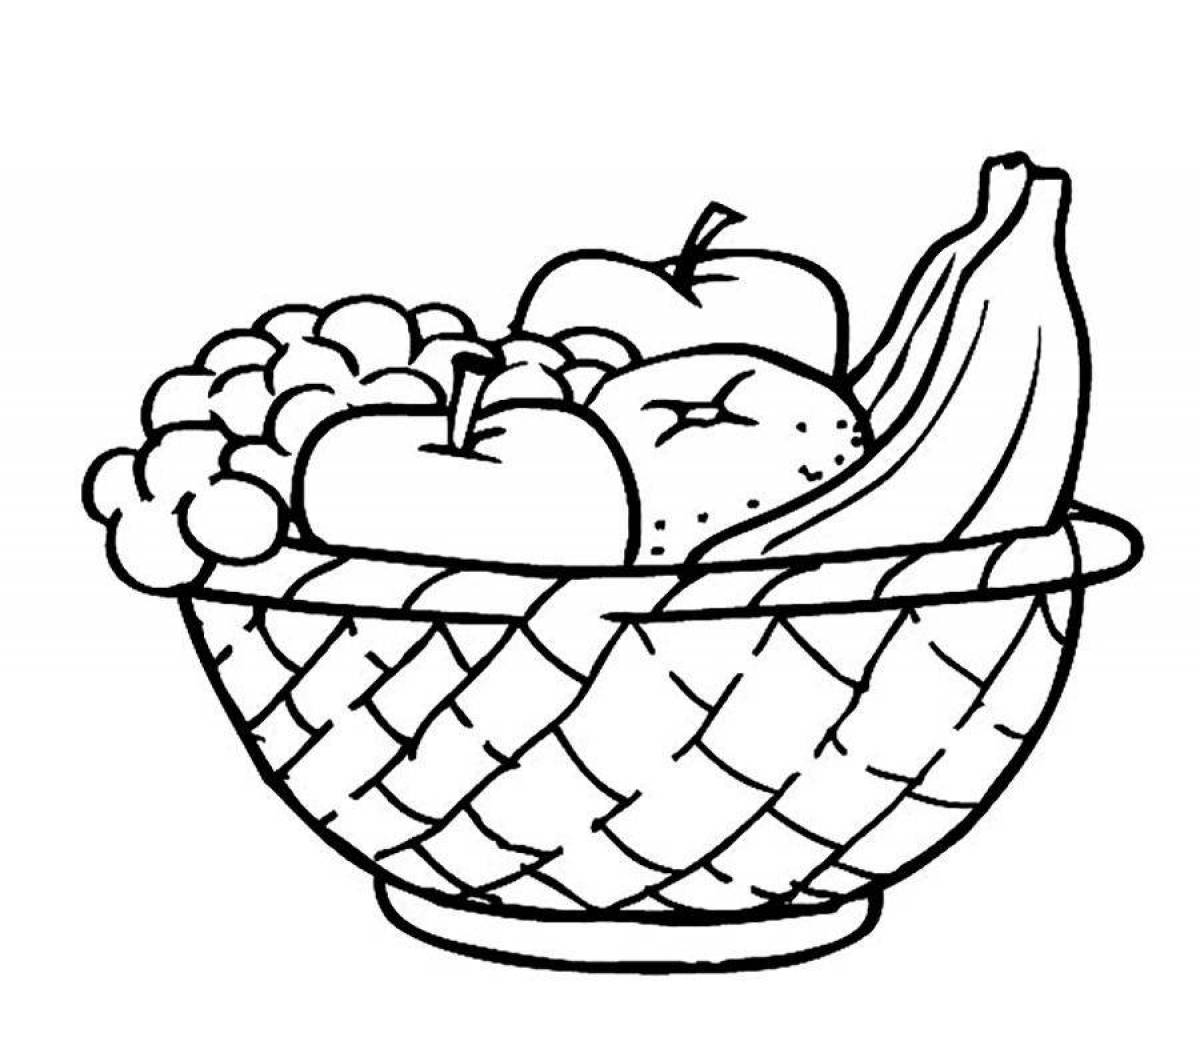 Vegetable basket #11